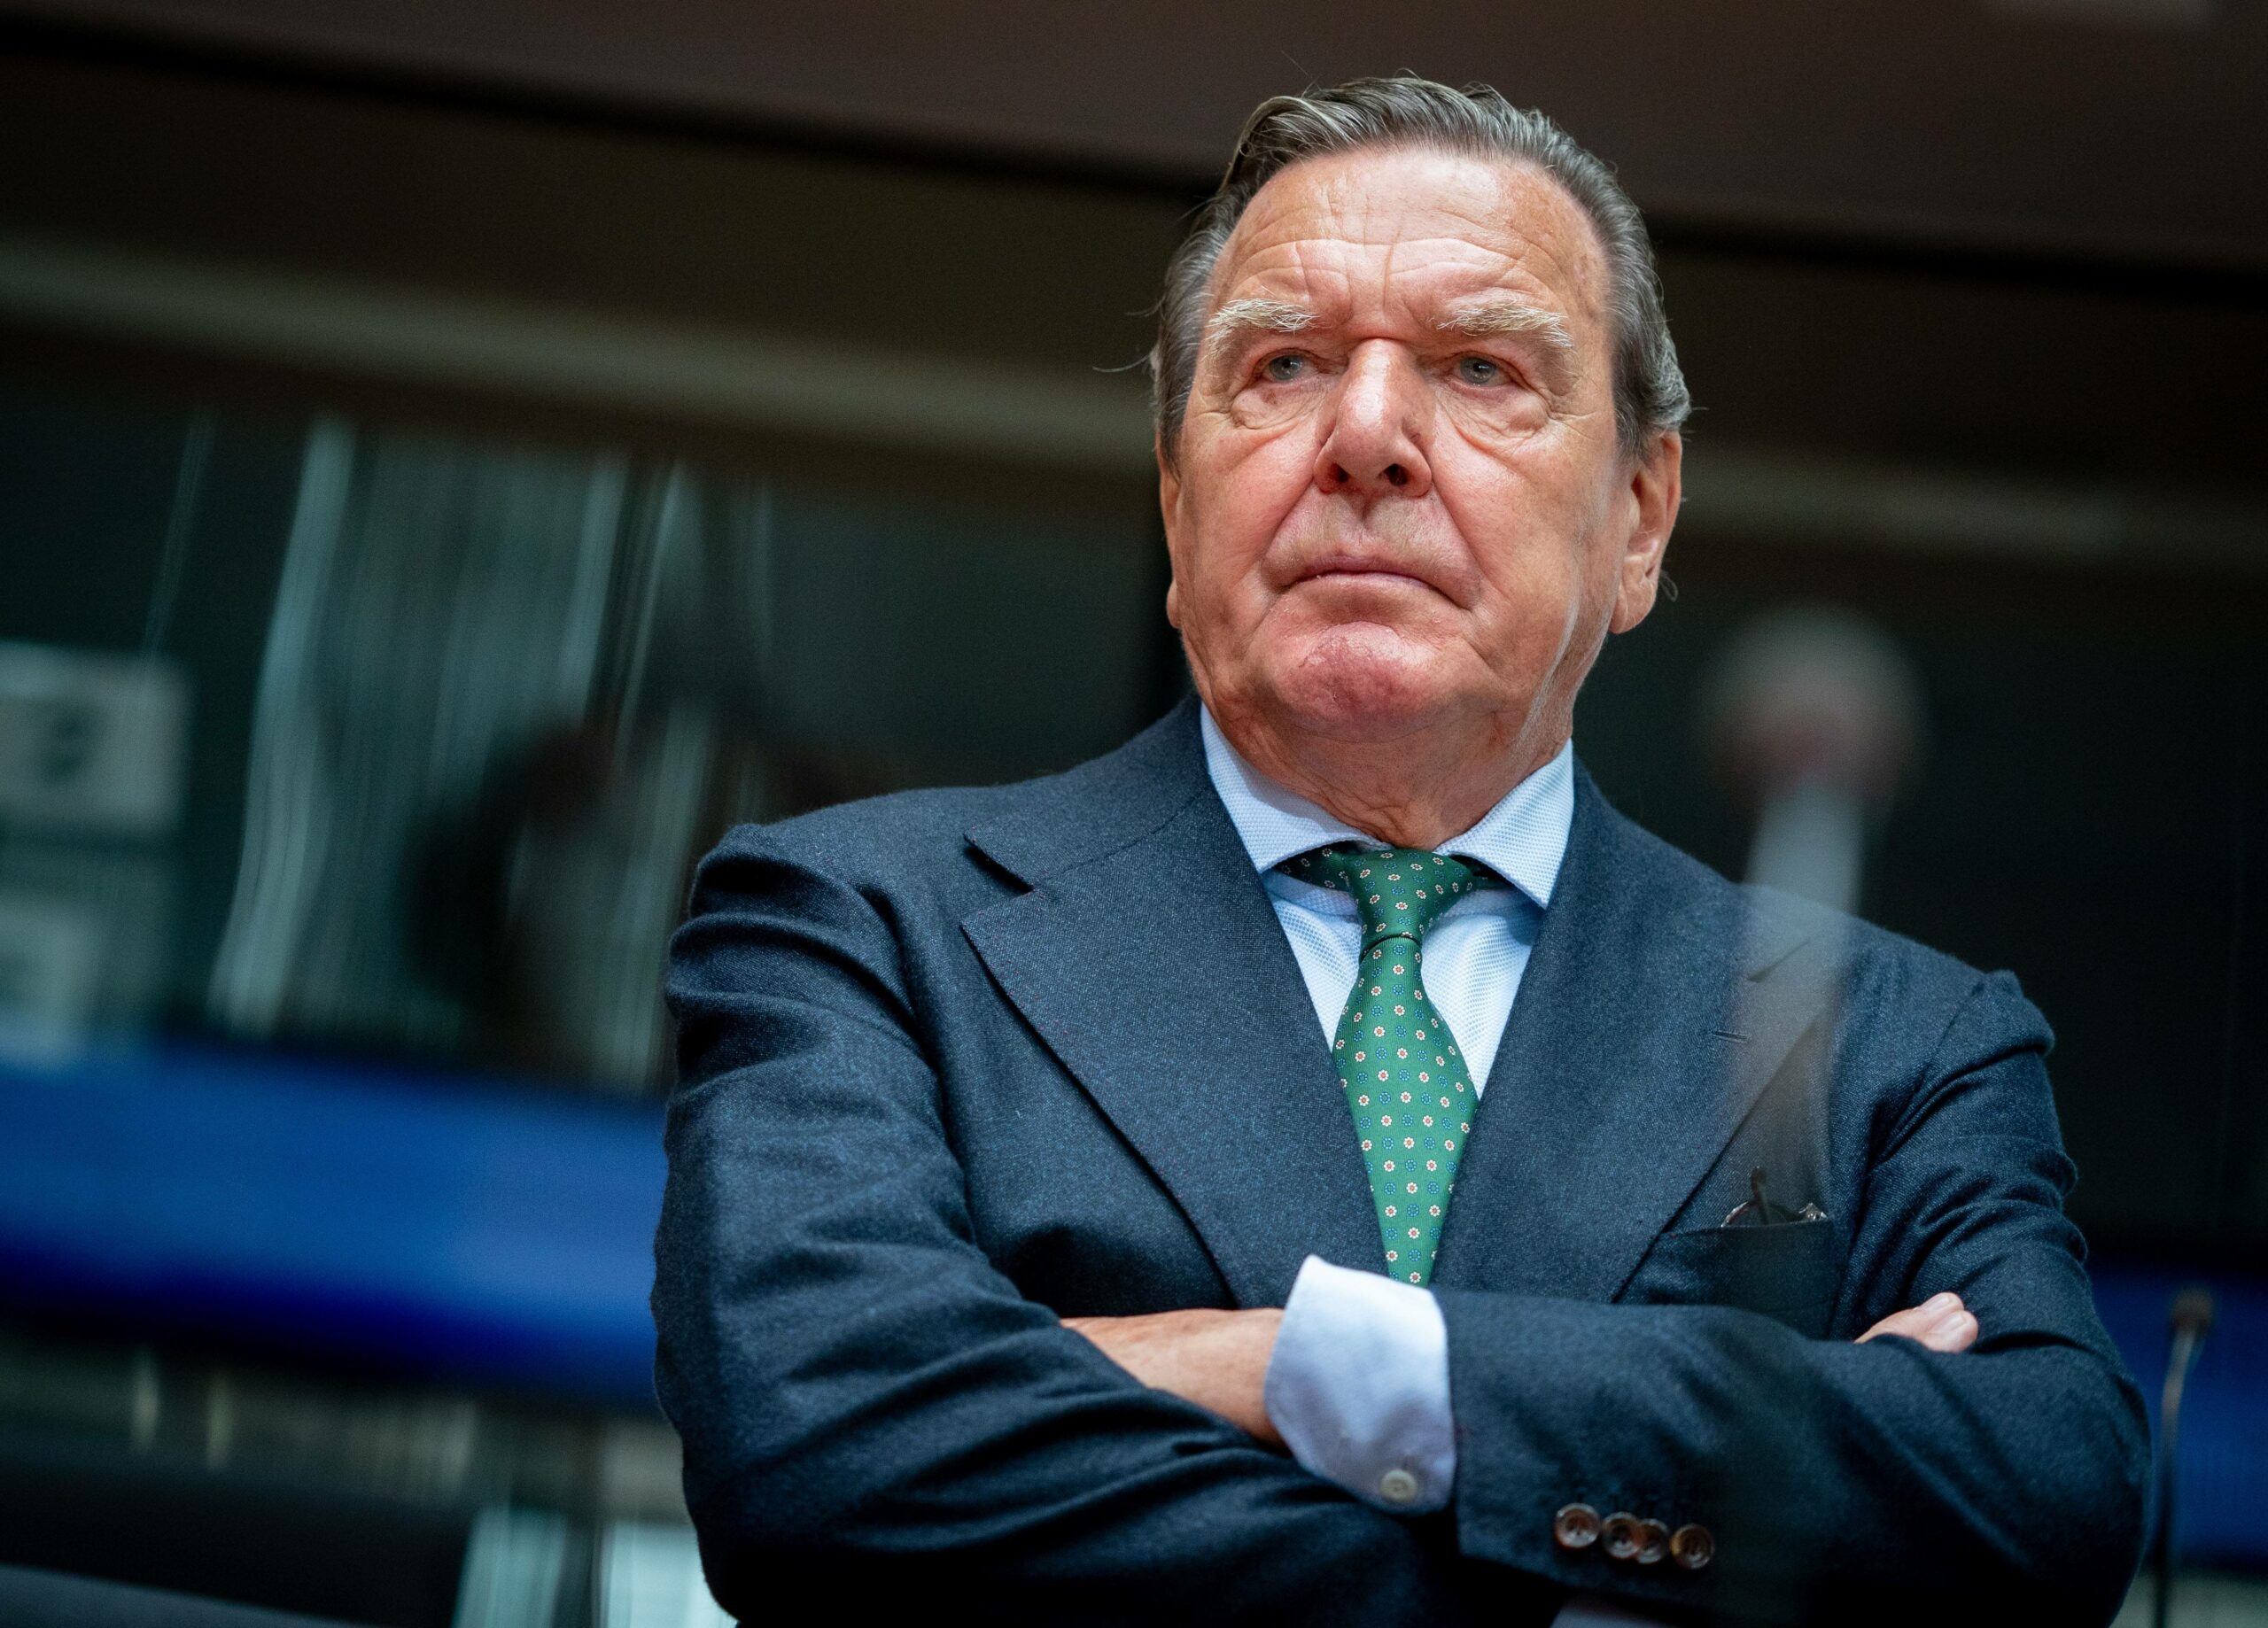 Aufnahme von Gerhard Schröder bei einer ANhörung im Bundestag.